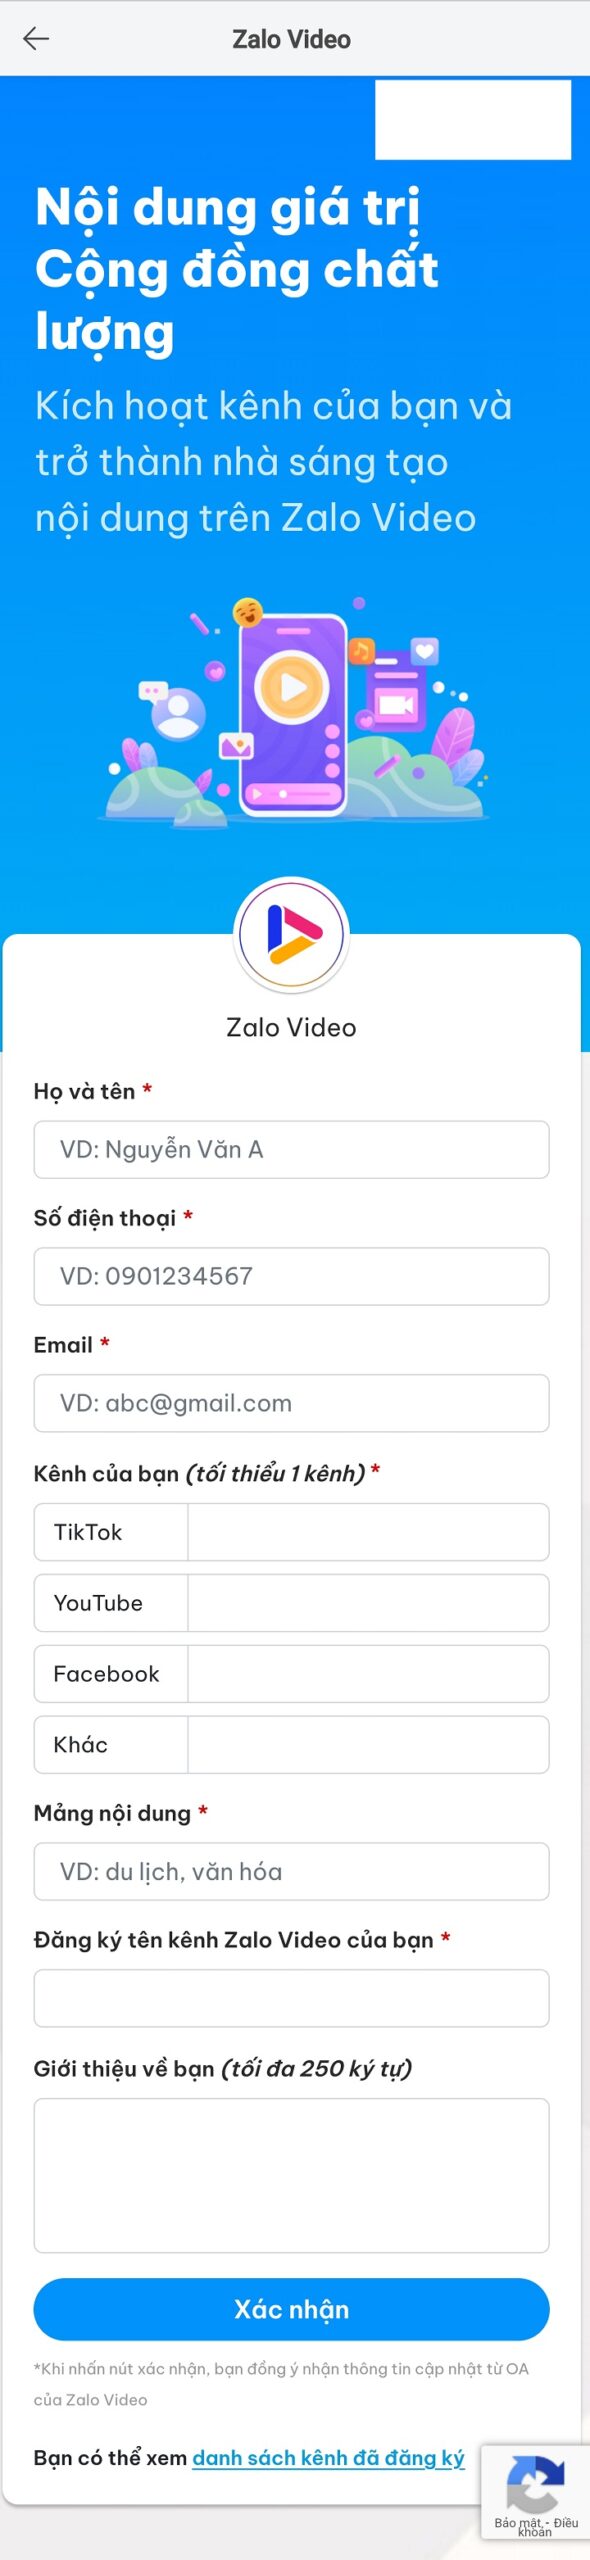 zalo-video-creator (2)